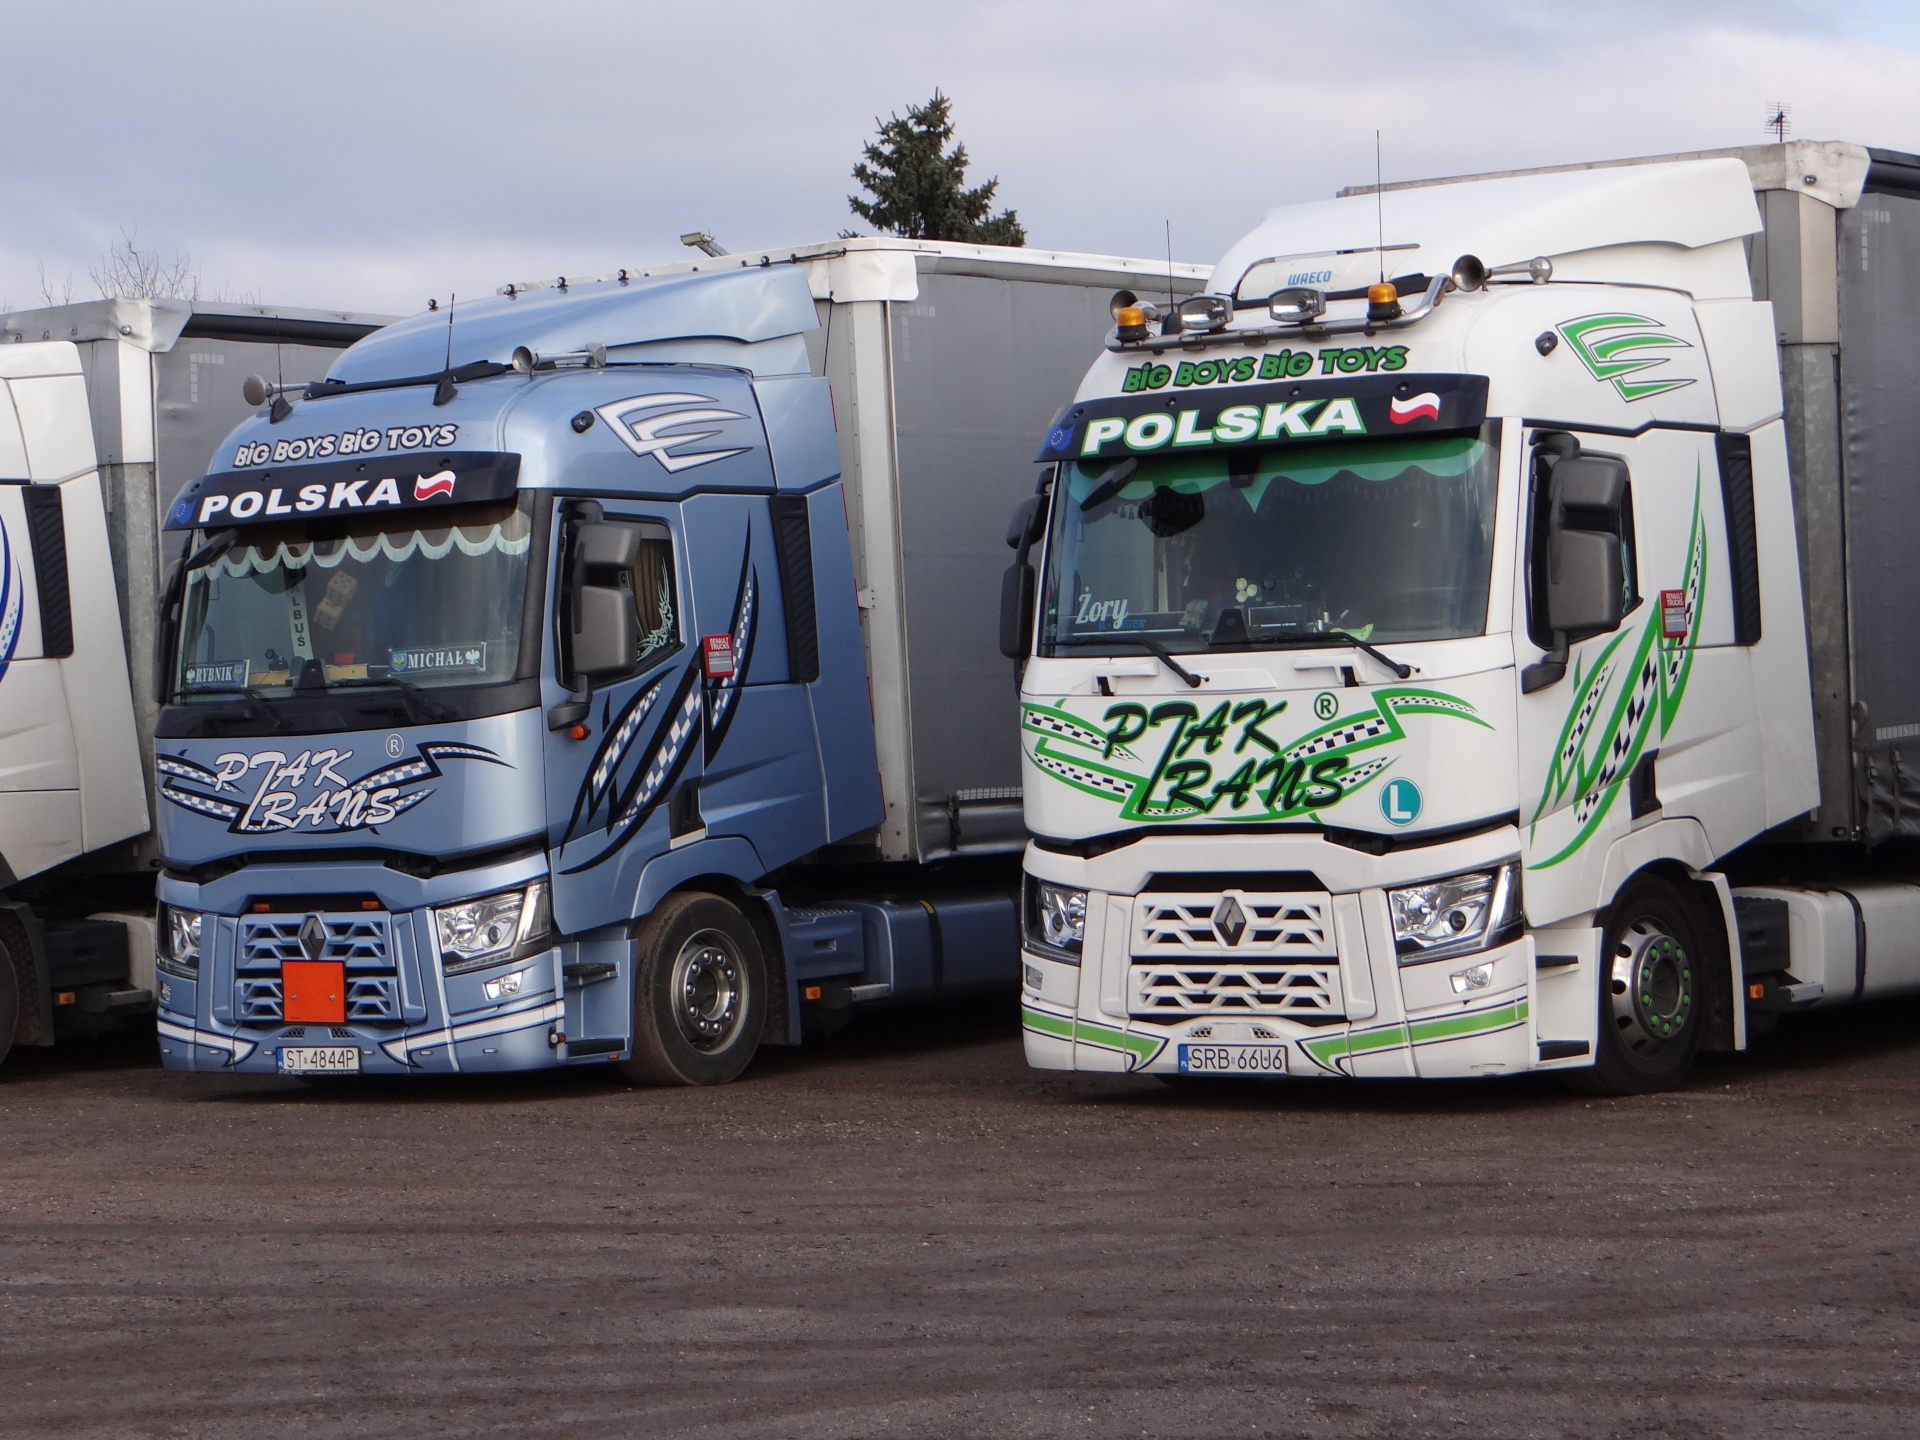 Dwie ciężarówki SCANIA - Jasnoniebieska i biało-zielona